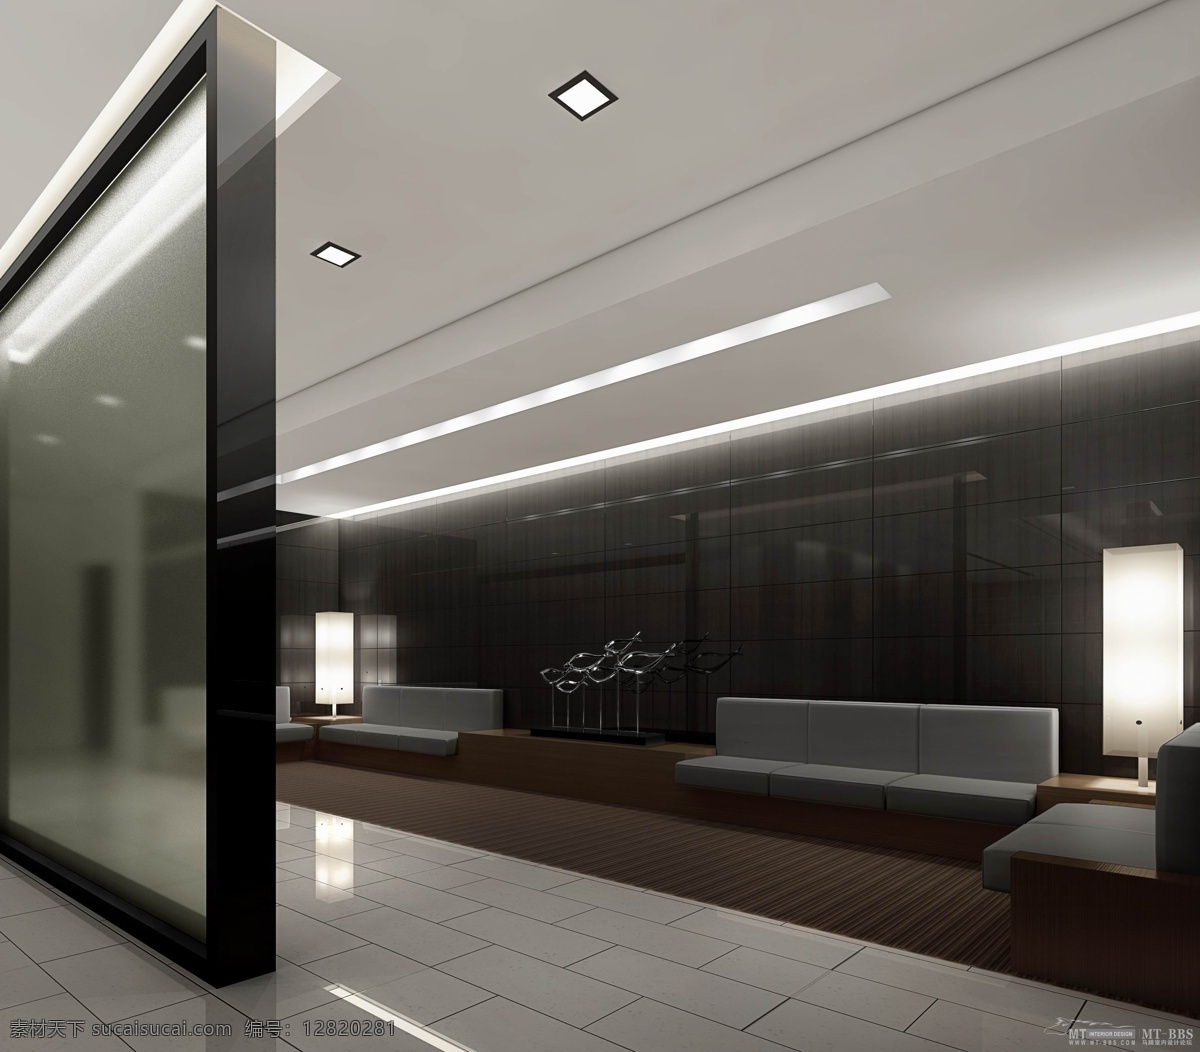 办公室 3d设计 3d作品 办公 大堂 过道 现代 效果图 公装 经理室 家居装饰素材 室内设计